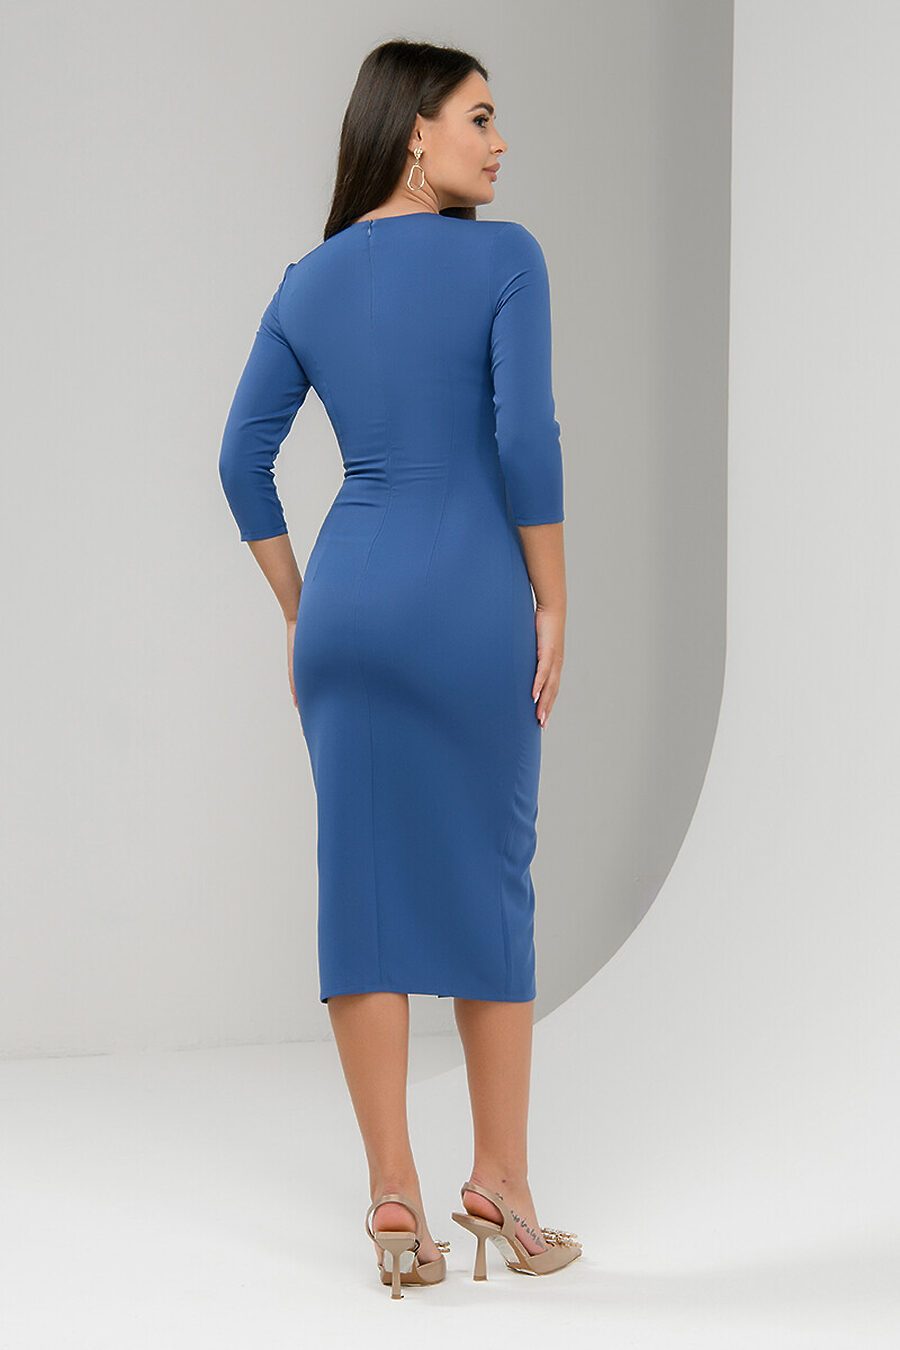 Платье для женщин 1001 DRESS 712363 купить оптом от производителя. Совместная покупка женской одежды в OptMoyo